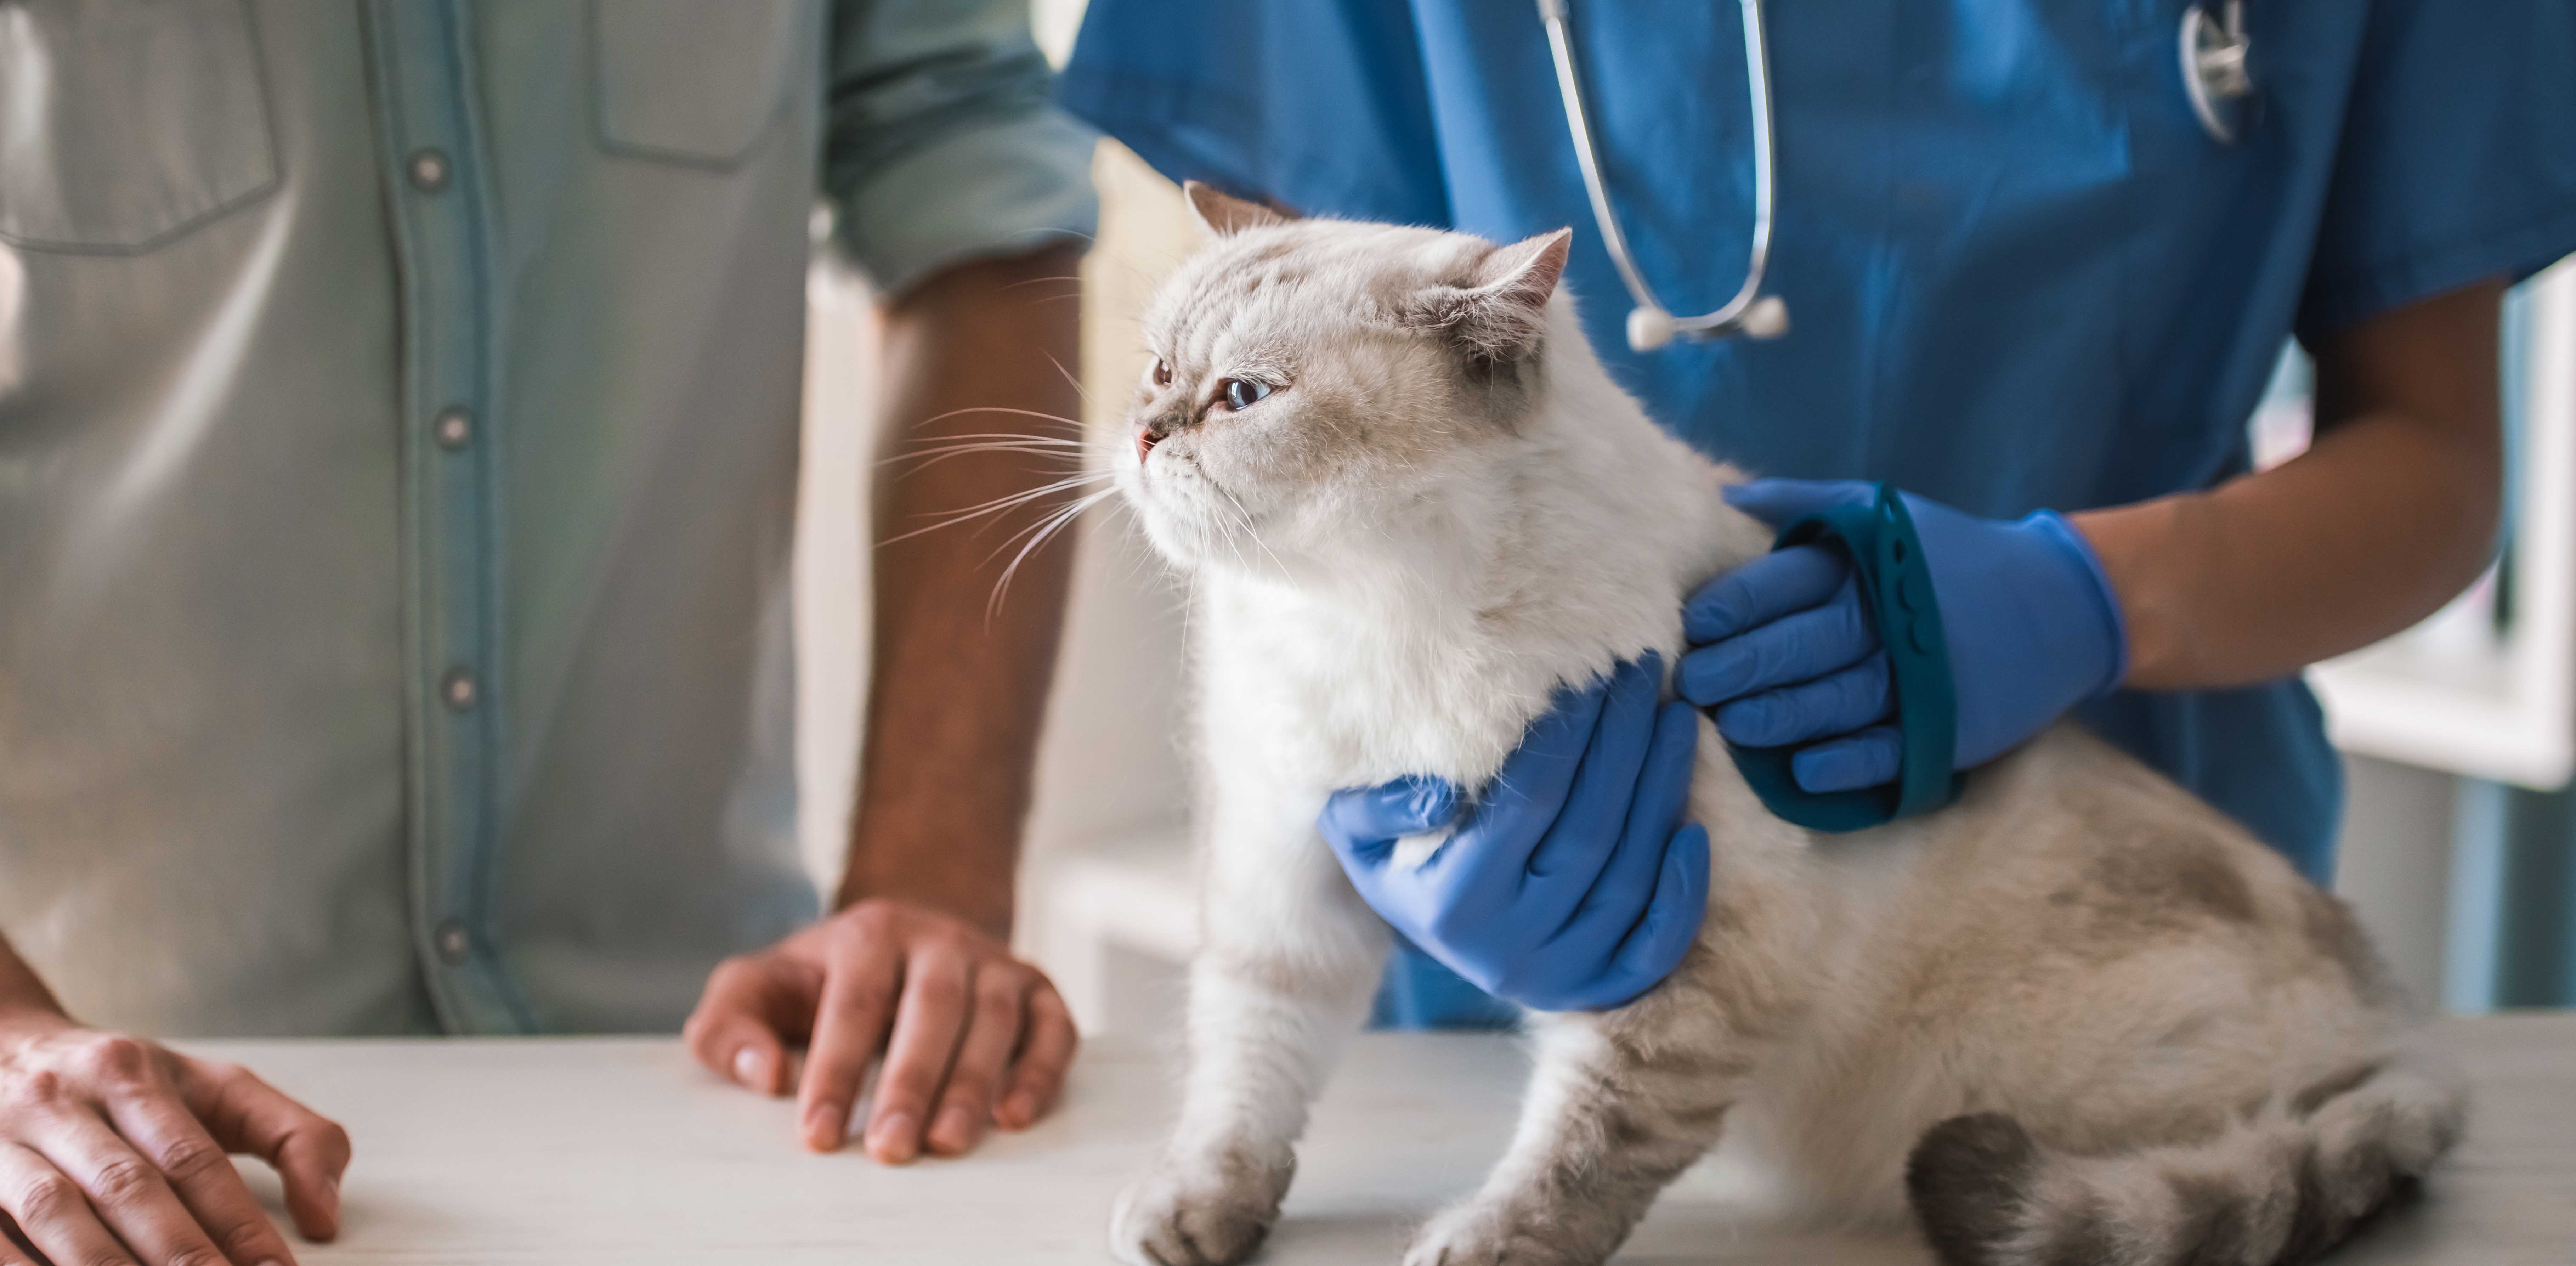 Обследование кошек. Осмотр кошки. Кошка в ветеринарной клинике. Кот у ветеринара. Ветеринар осматривает кошку.